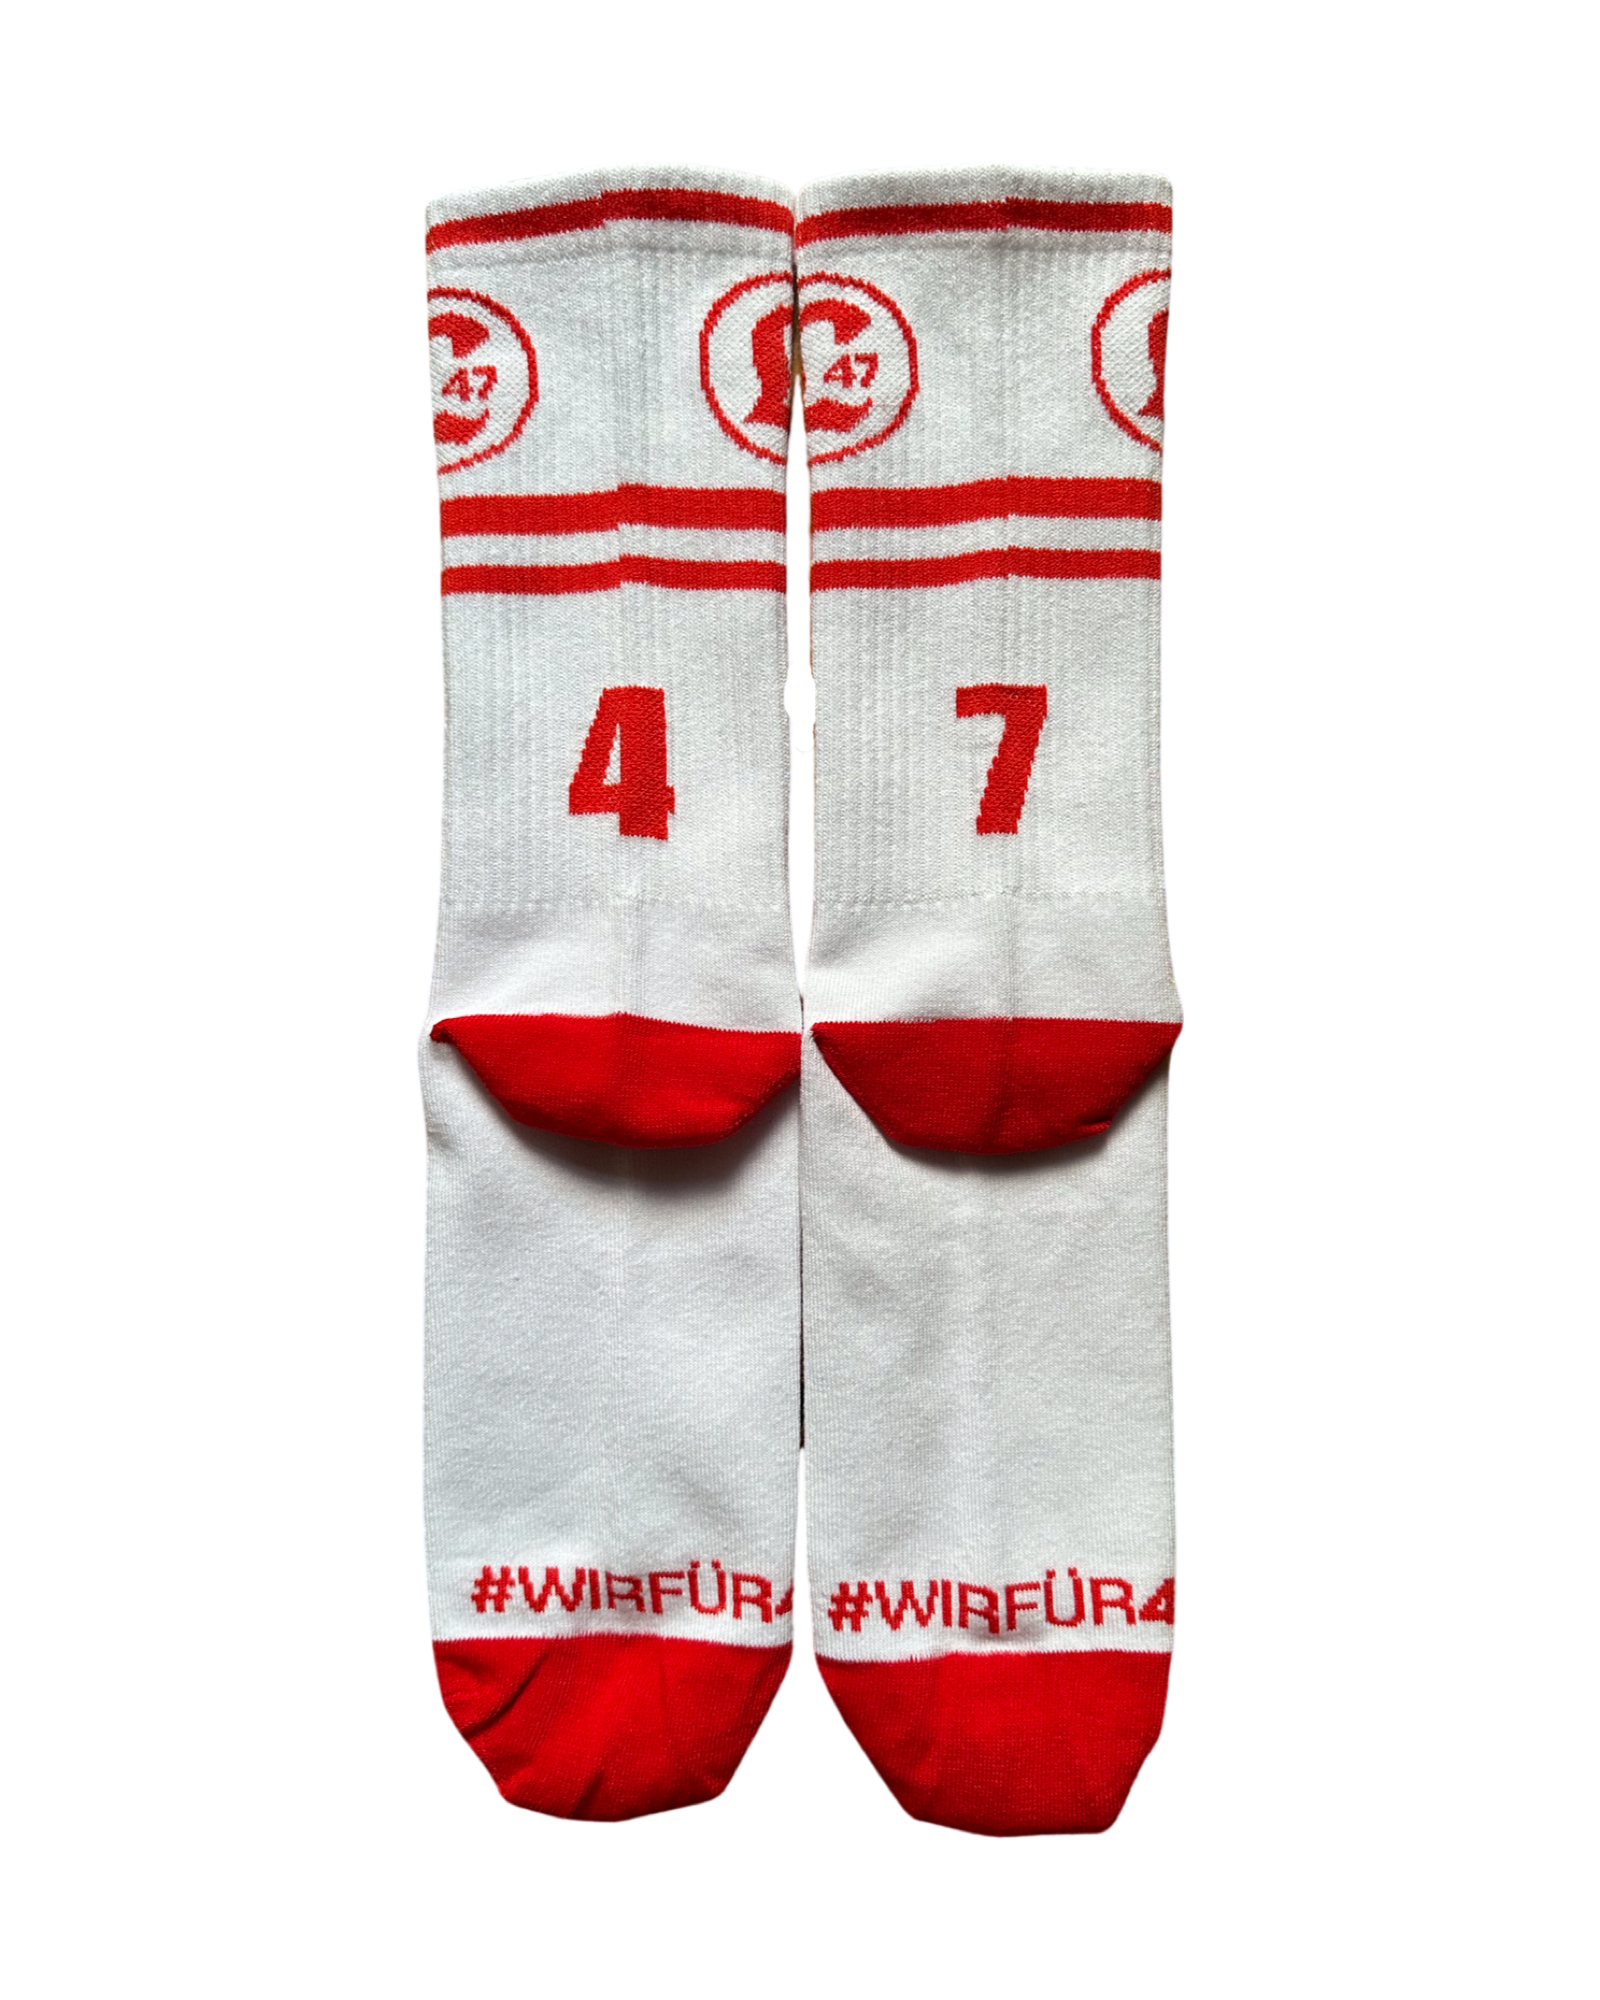 47er Socken Weiß - Lichtenberg 47